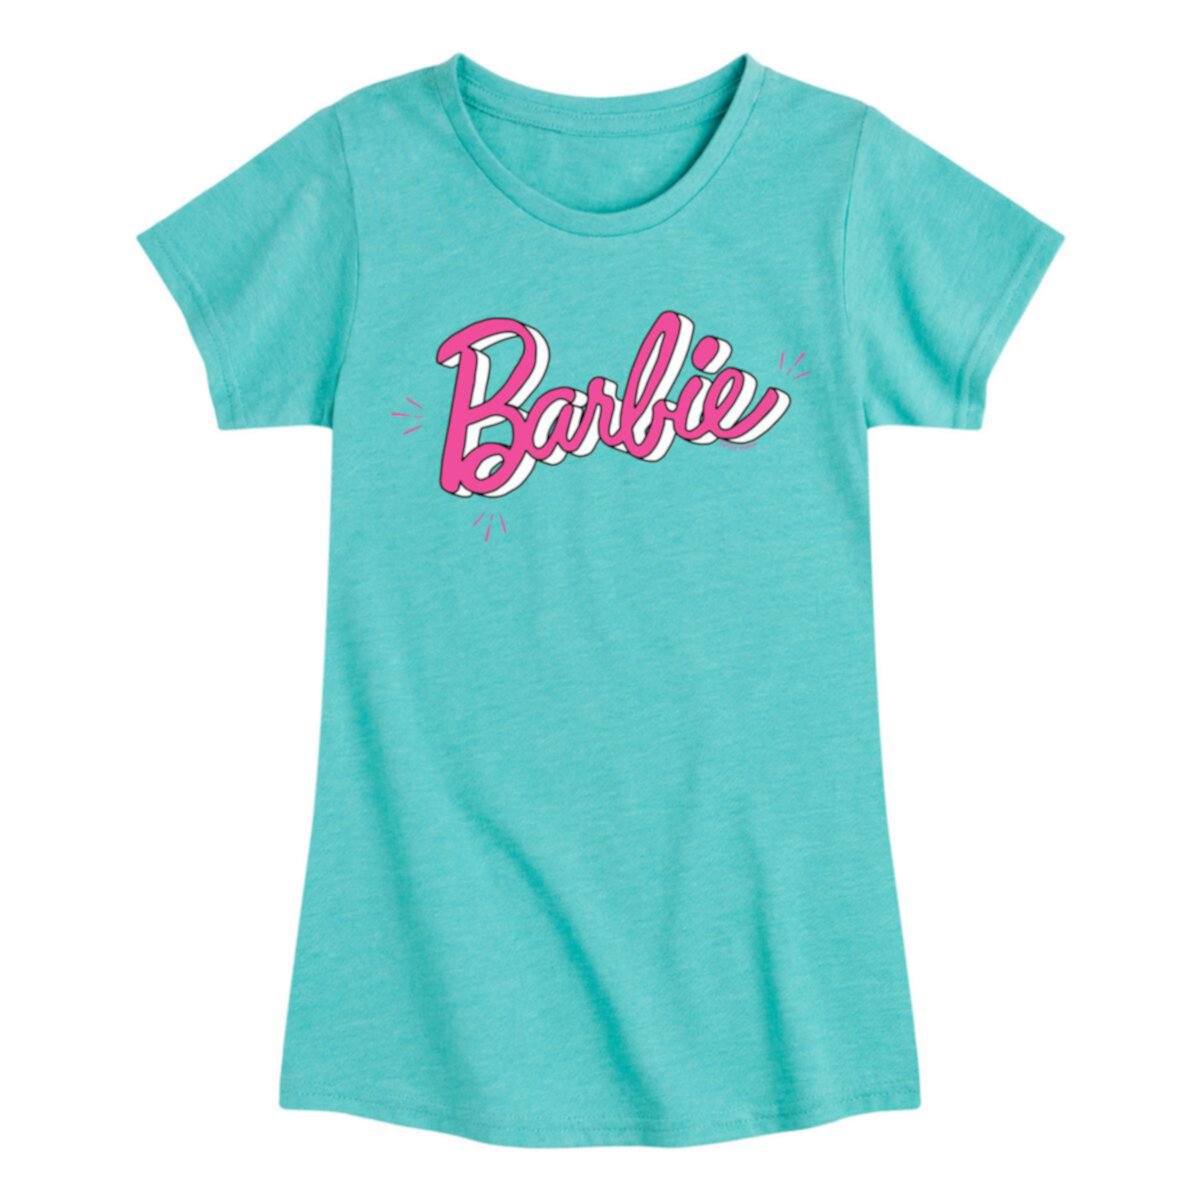 Футболка с логотипом Barbie® Sketch для девочек 7–16 лет Barbie